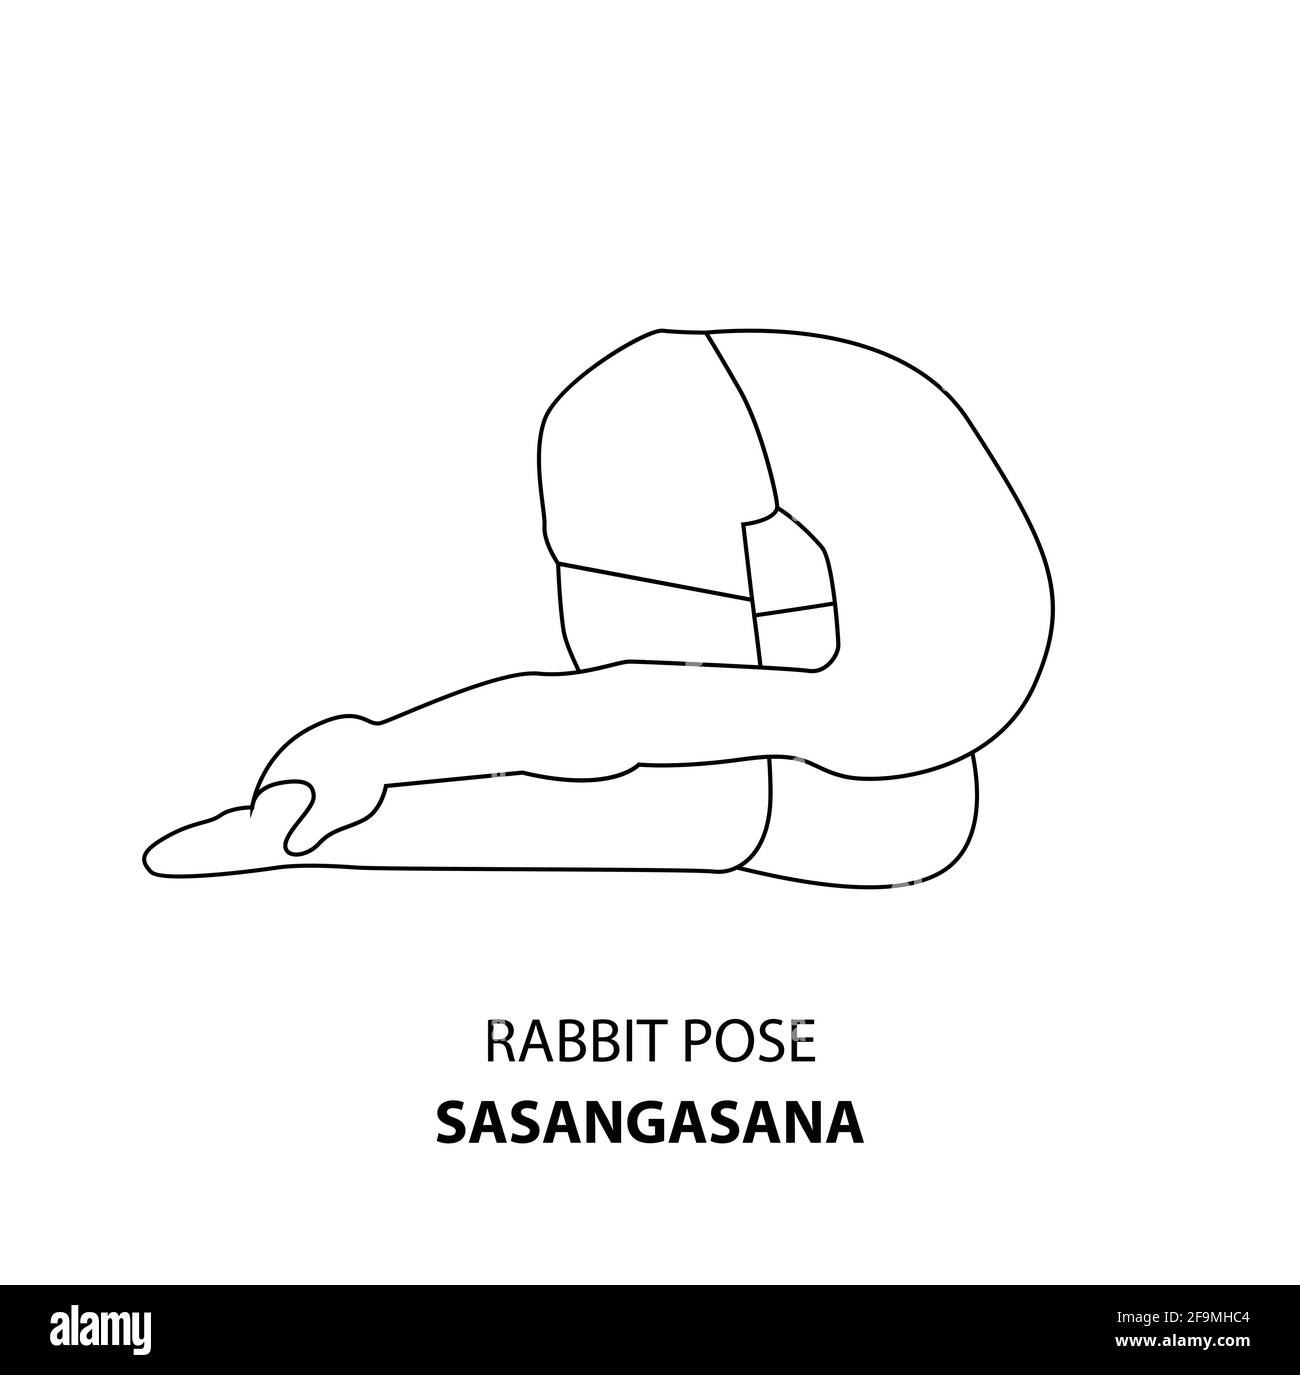 Homme pratiquant le yoga pose isolé contour Illustration. Homme debout dans la pose de lapin ou la pose de sasangasana, icône de la ligne de Yoga Asana Illustration de Vecteur